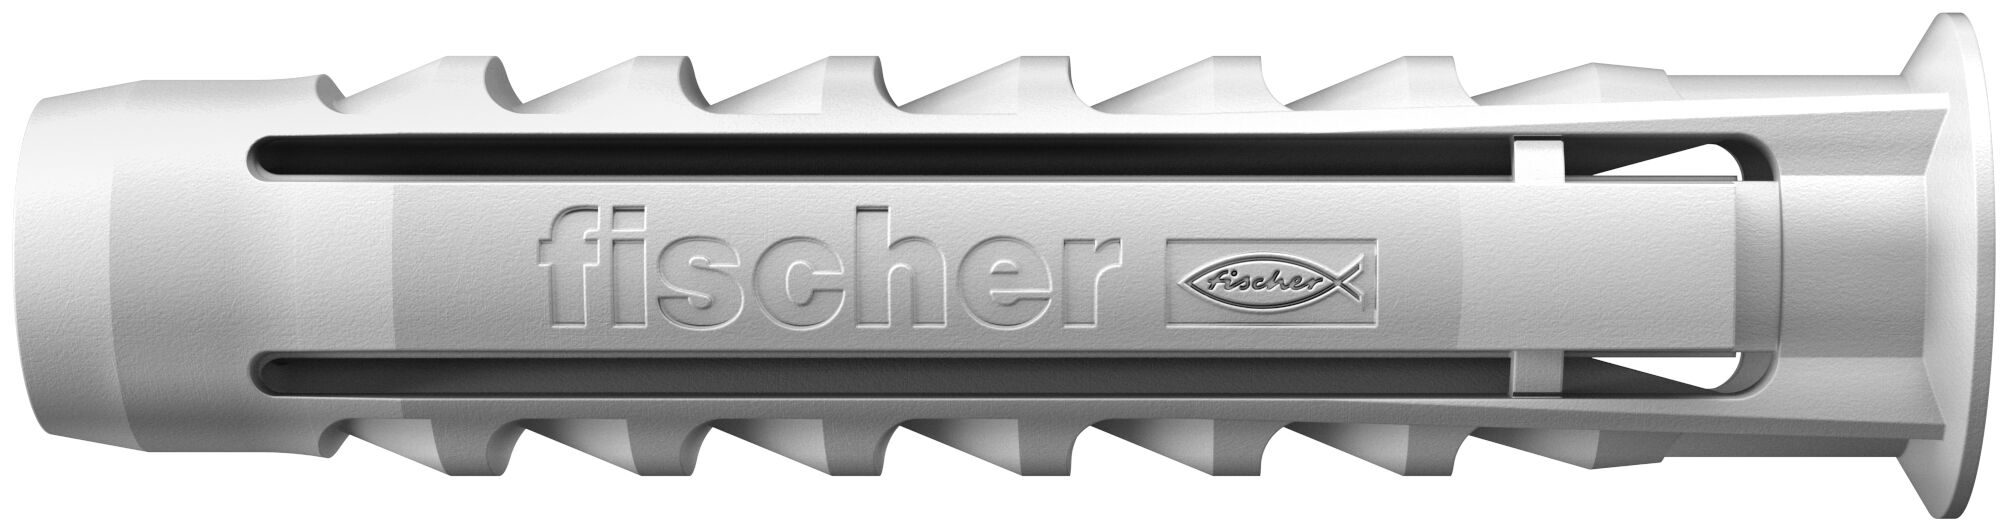 Original Fischer SX Dübel 6 mm Nylon 6x30mm verschiedene Stückzahlen Spreizdübel 